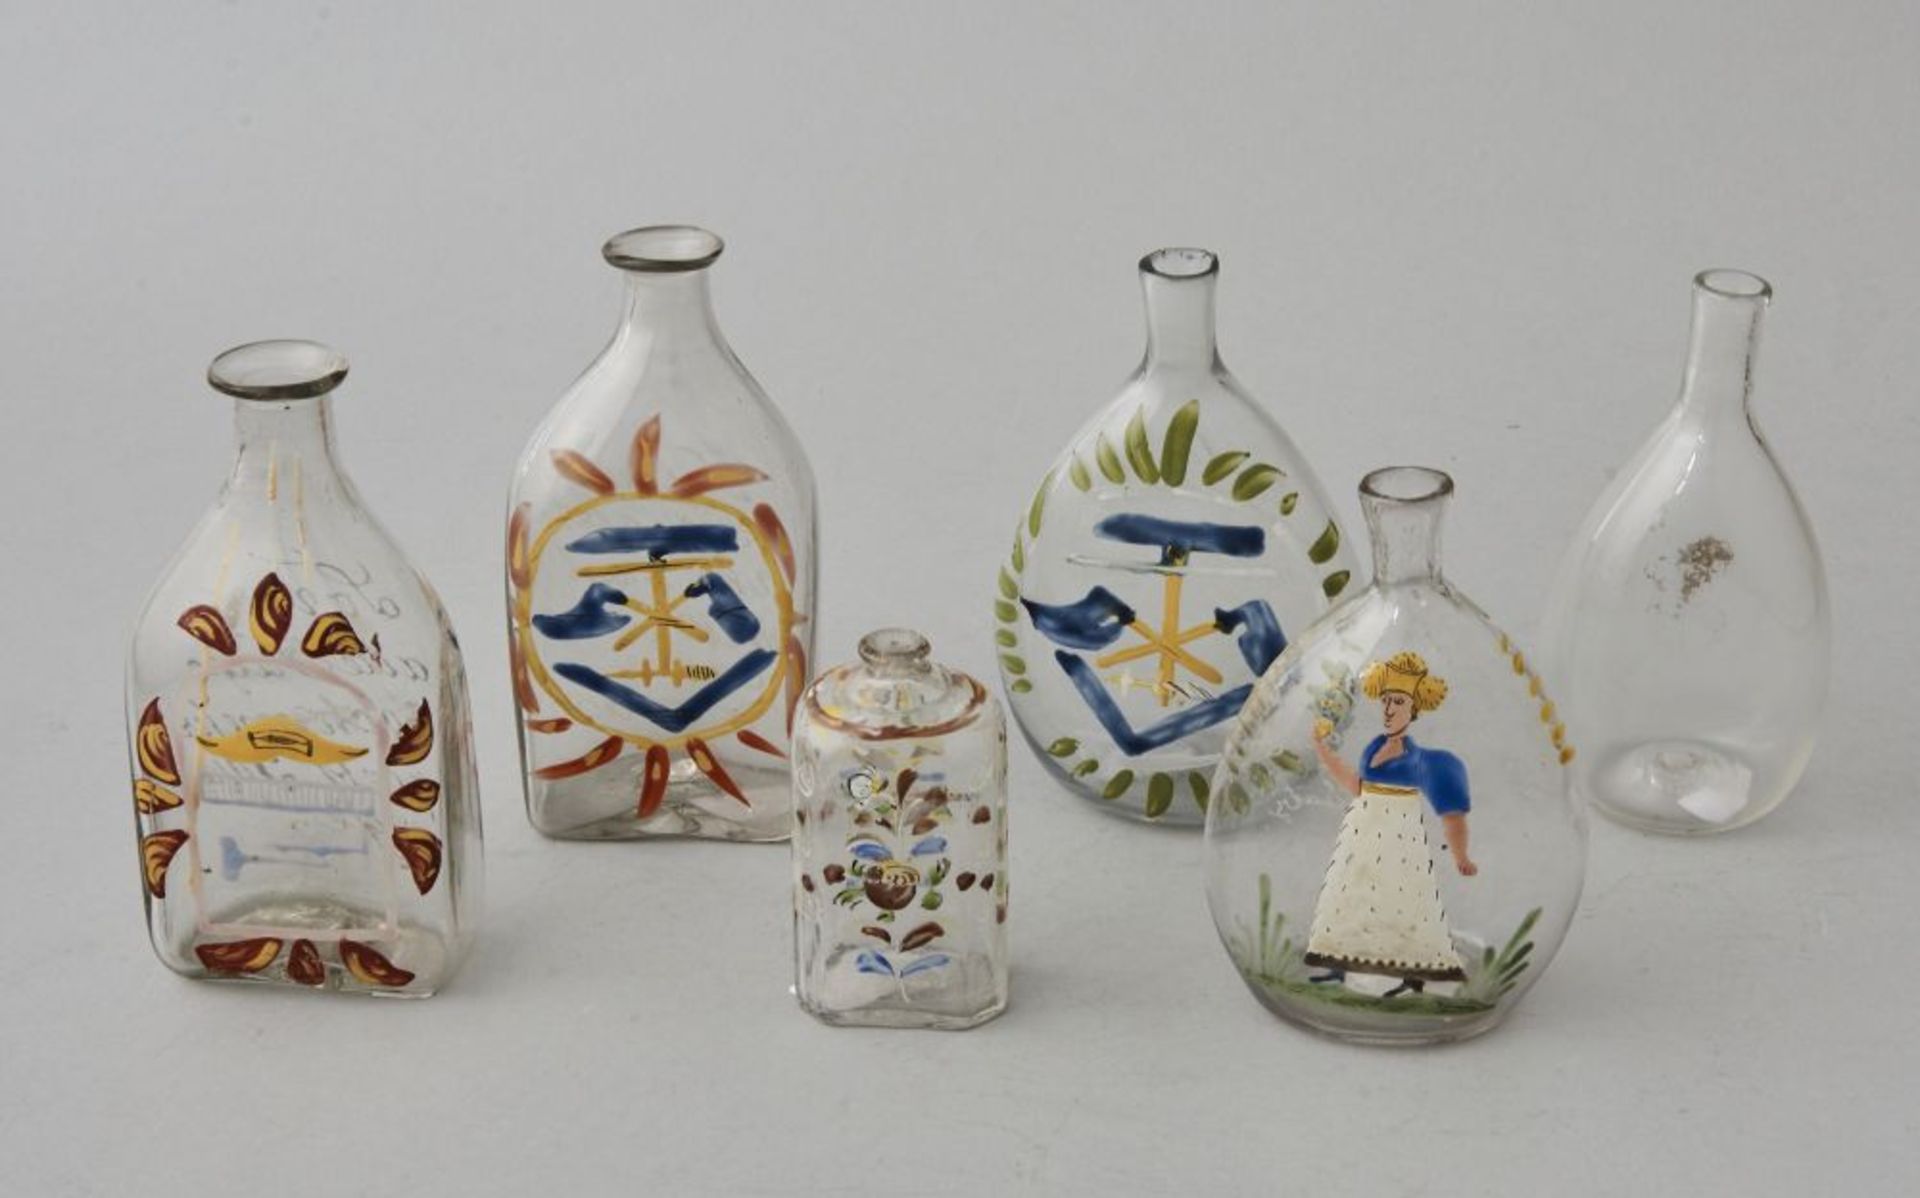 6 Glasobjekte, süddeutschGlasflaschen verschiedener Größen mit Abriss, süddeutsch. Höhe 10-15 cm